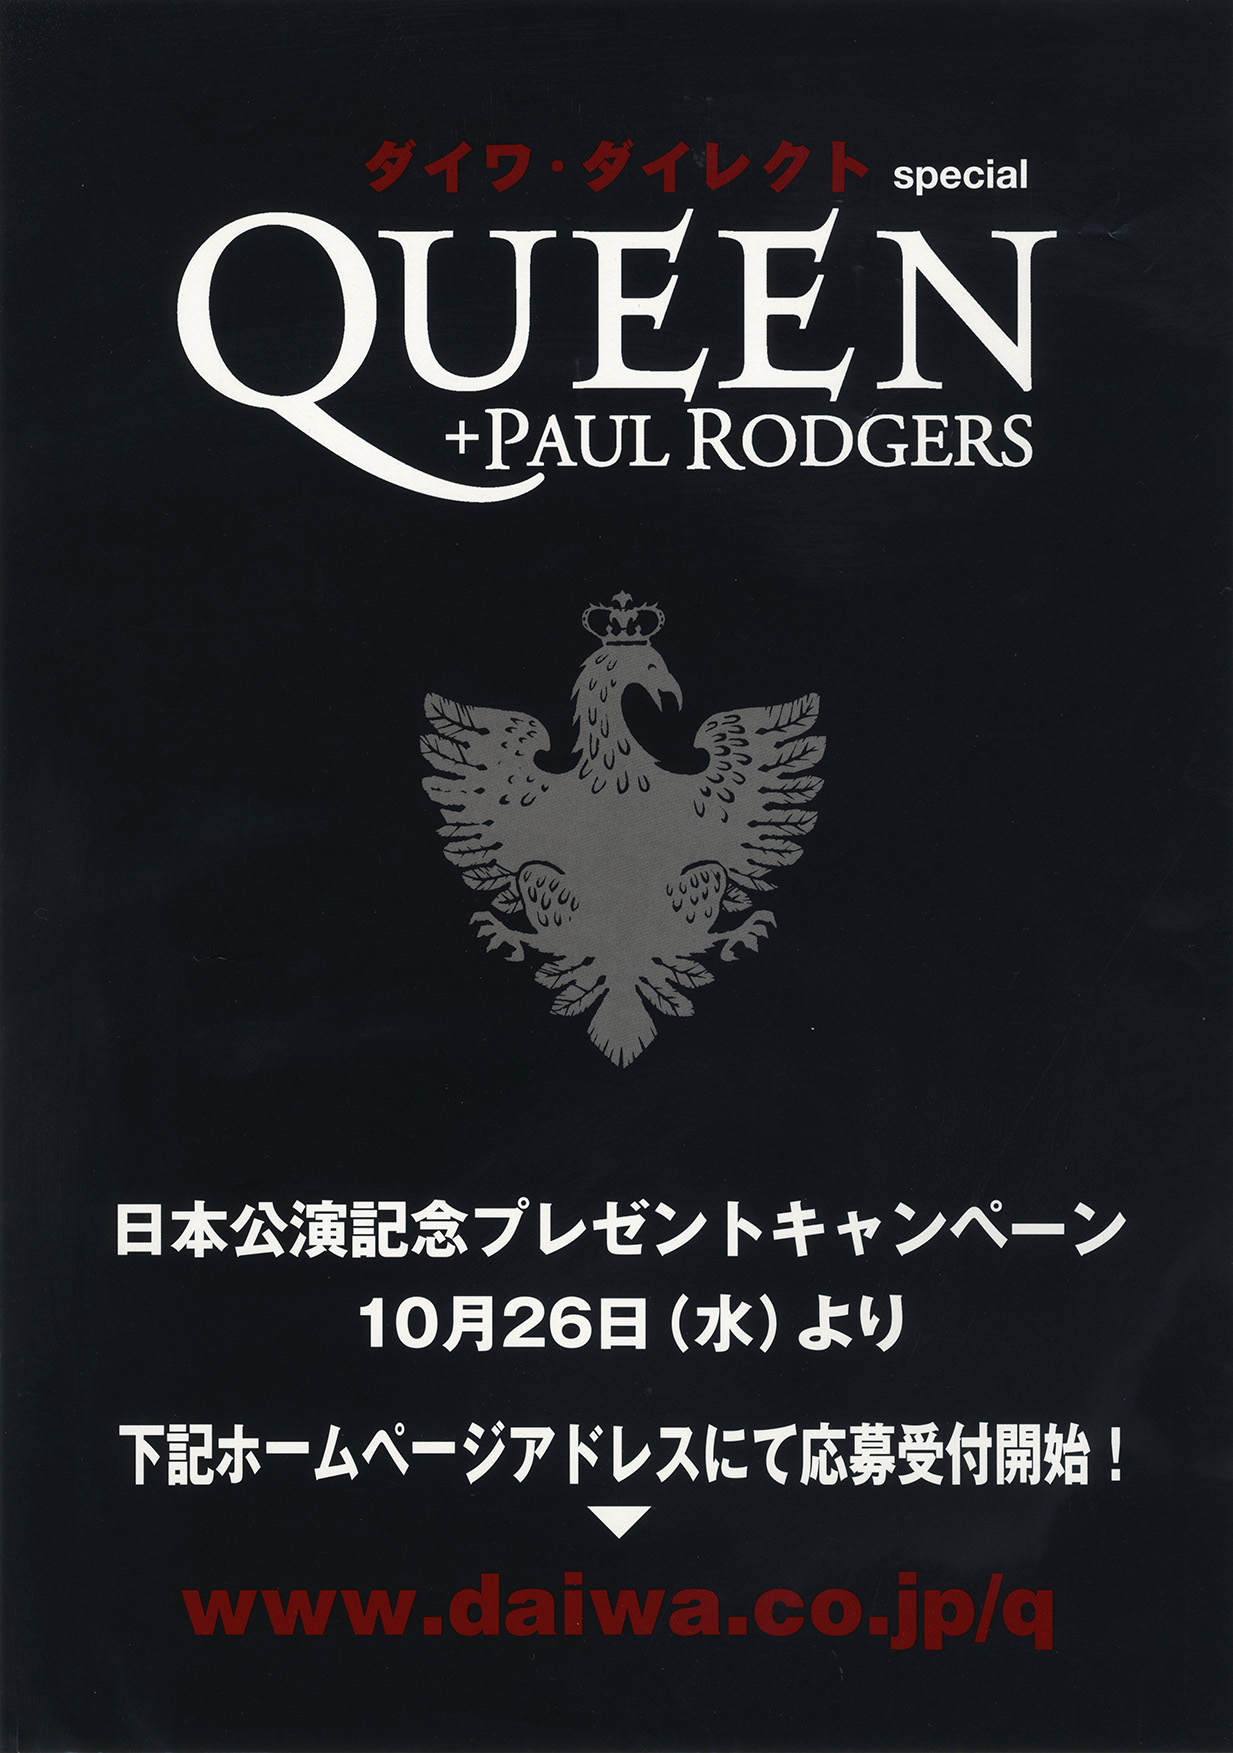 Queen + Paul Rodgers in Tokyo on 26.10.2005